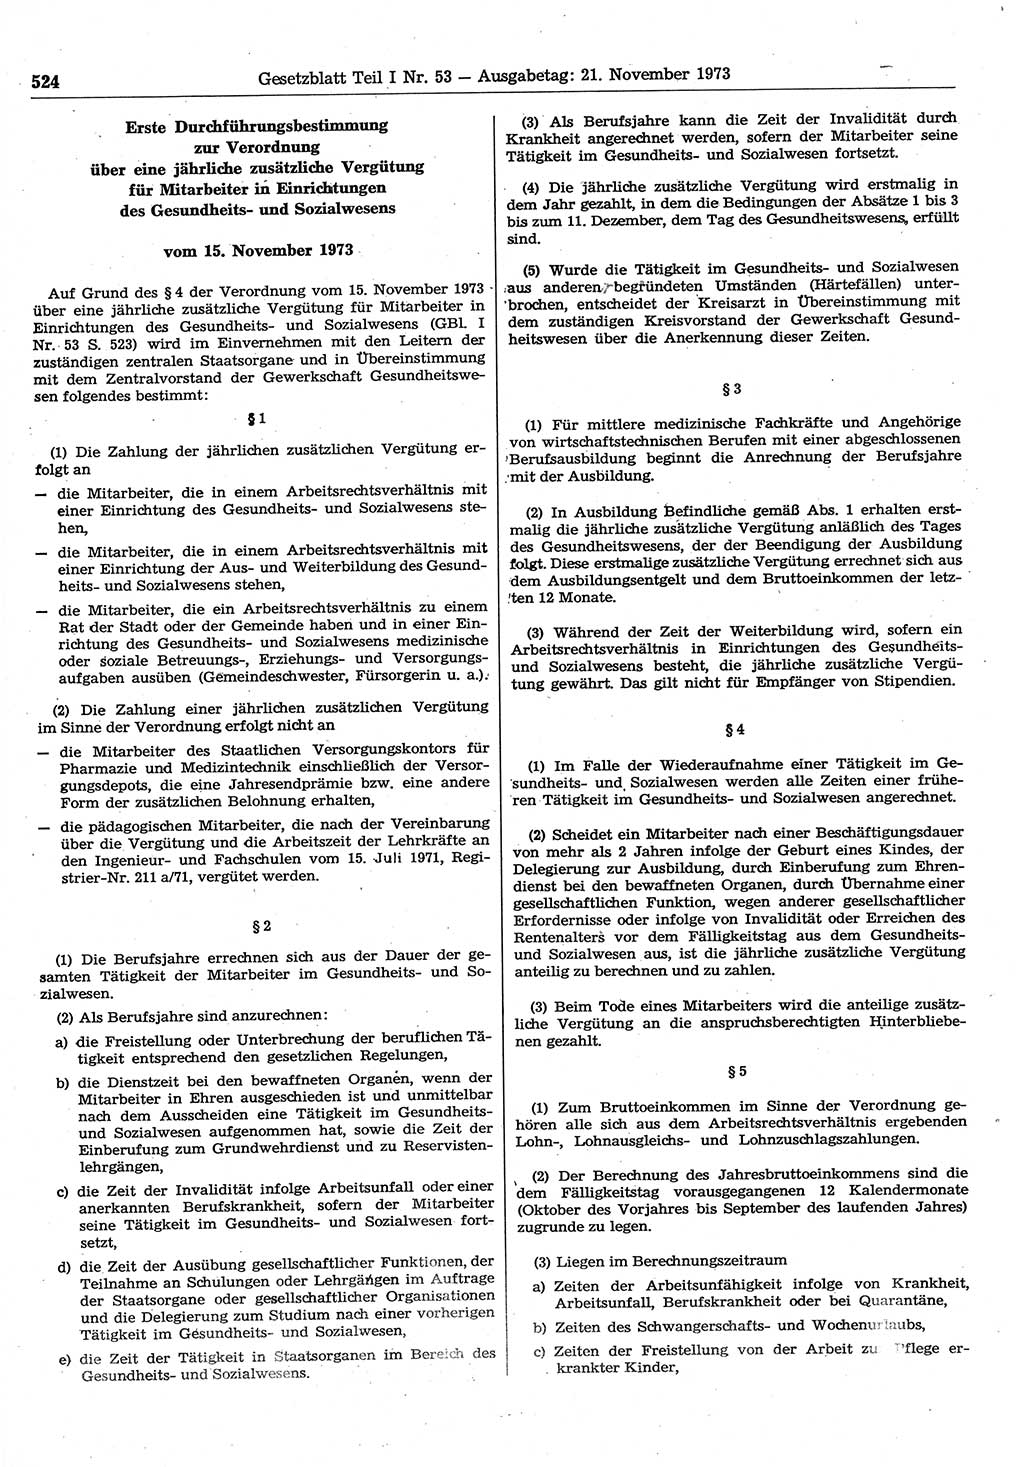 Gesetzblatt (GBl.) der Deutschen Demokratischen Republik (DDR) Teil Ⅰ 1973, Seite 524 (GBl. DDR Ⅰ 1973, S. 524)